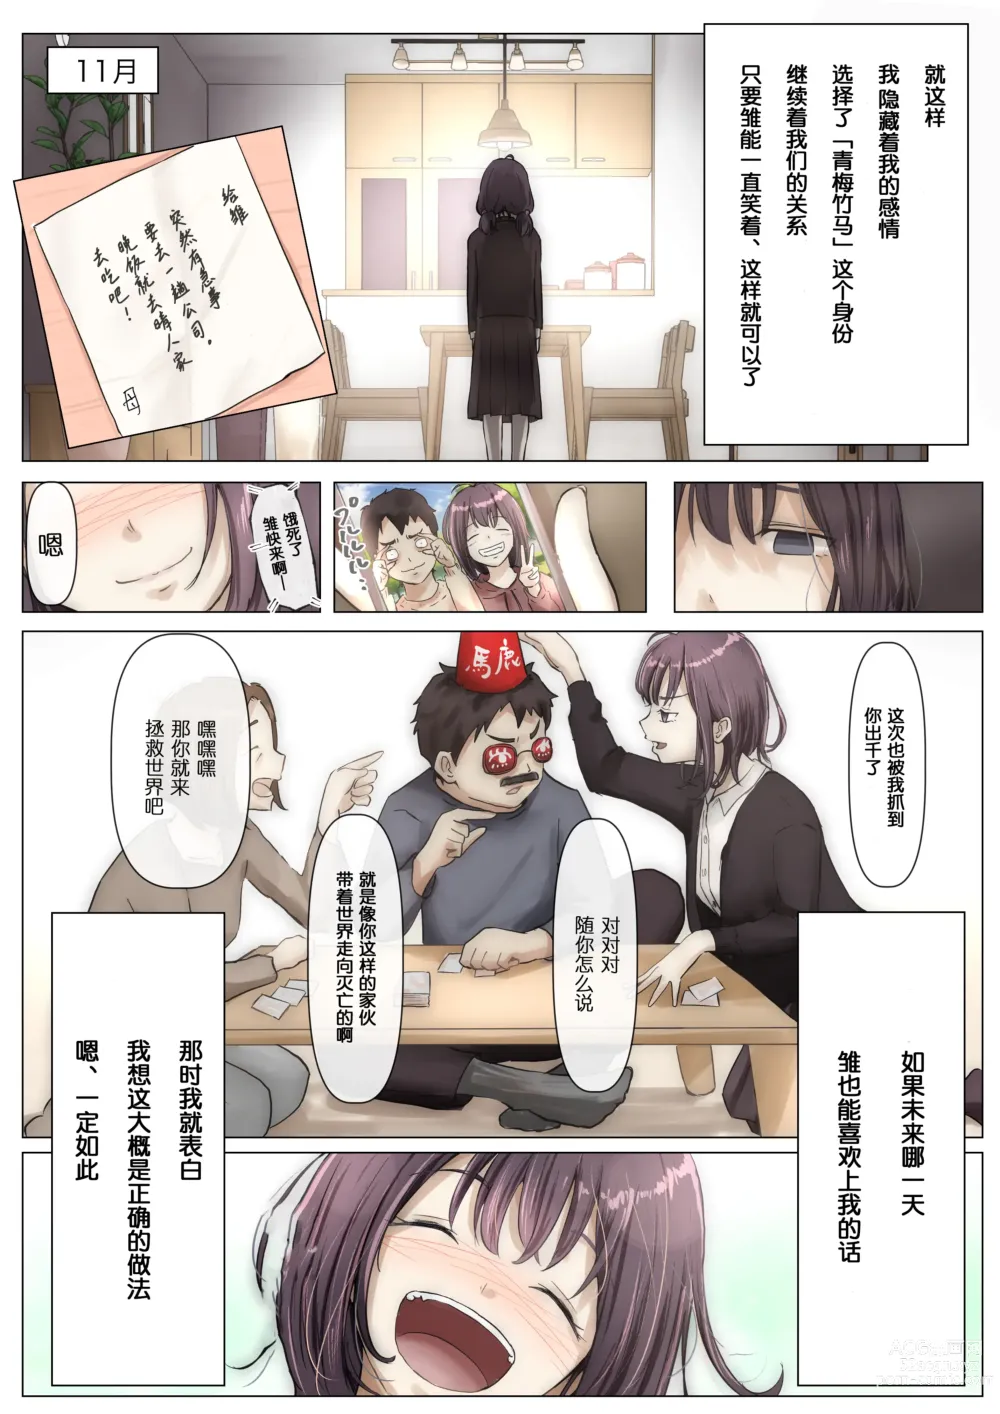 Page 18 of doujinshi Kimi no Subete o Ubau made